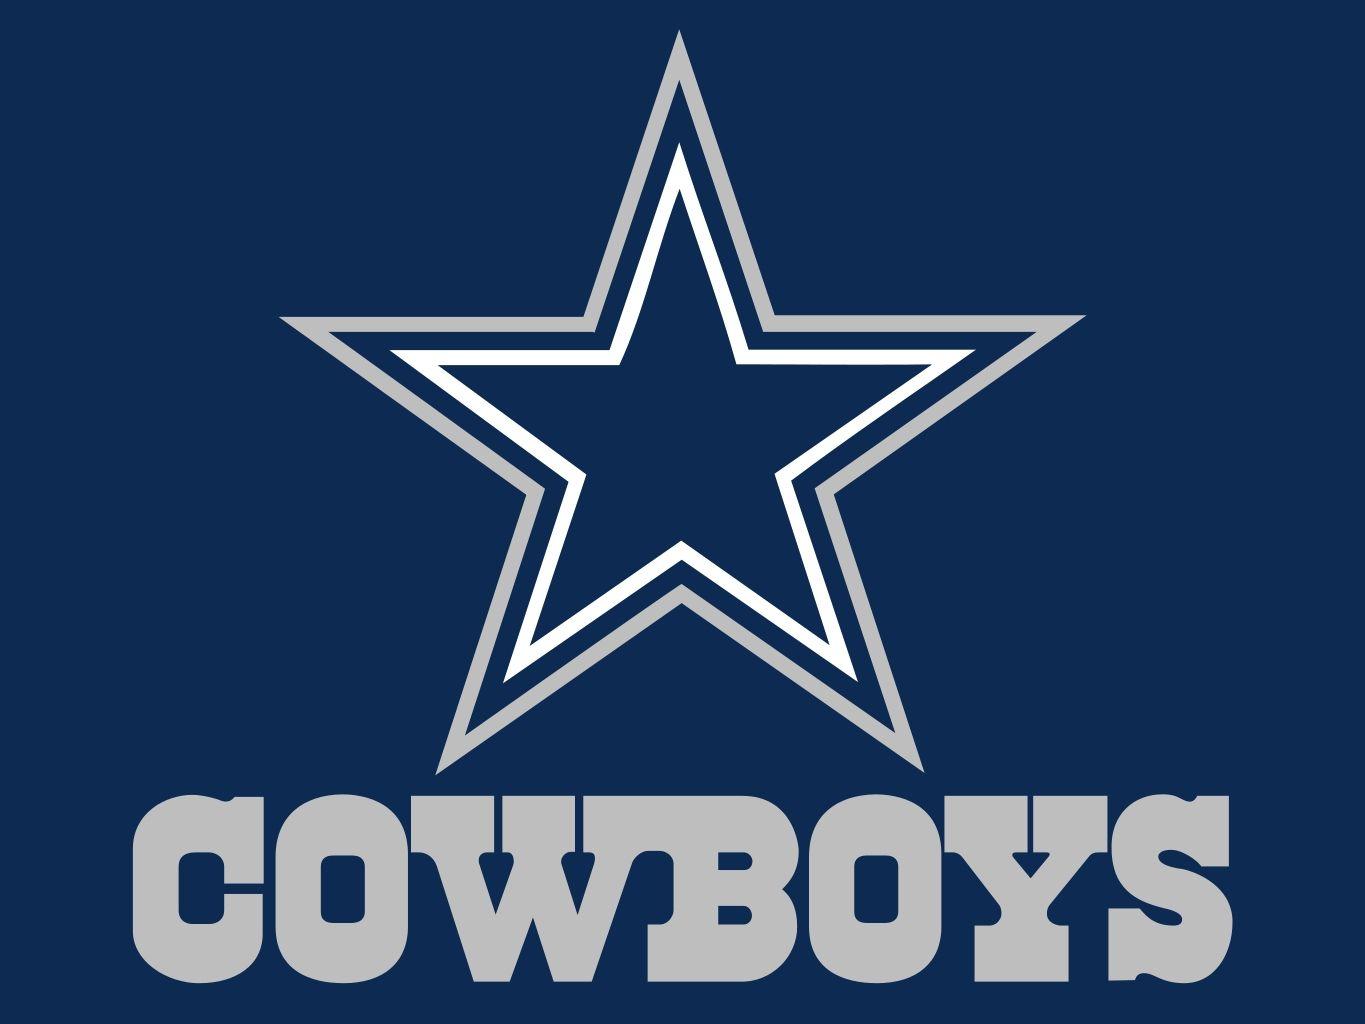 Cowboys Football Logo - NFL Teams